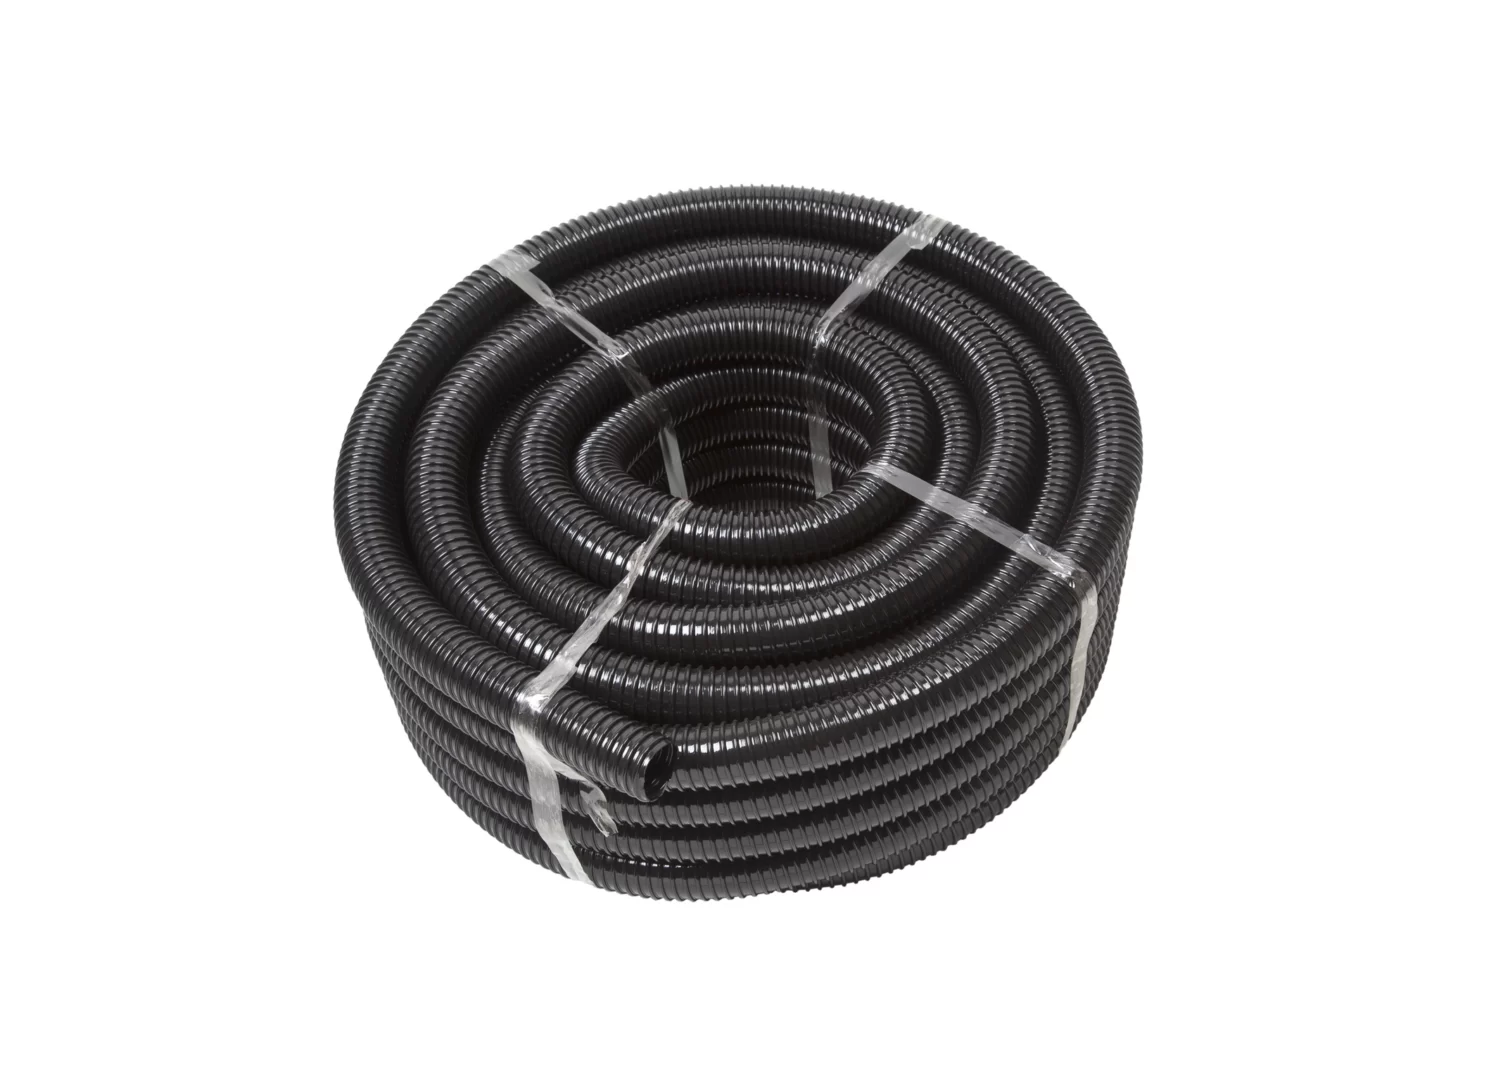 Filter Hose 40 mm – filterpomp slang per meter